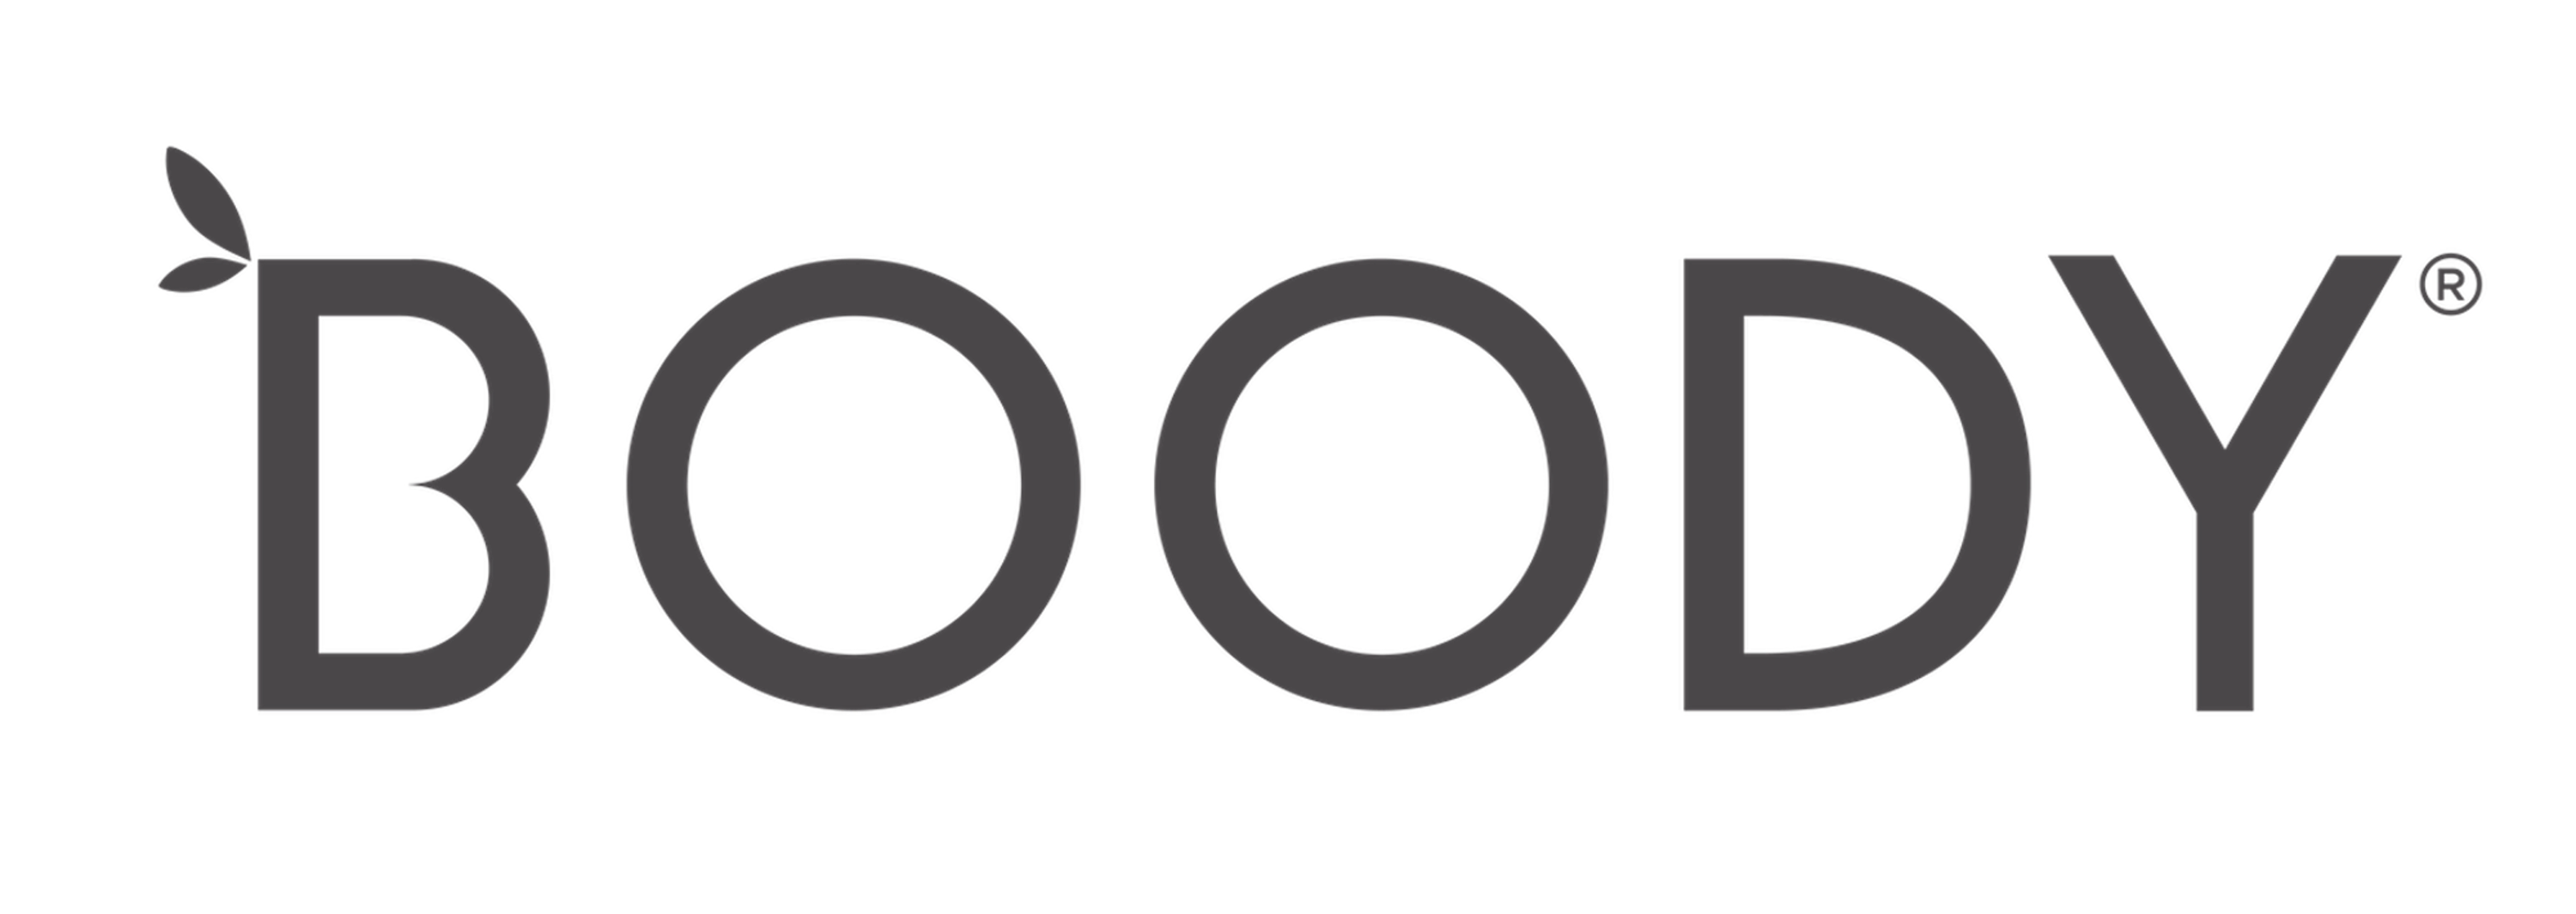 Boody Canada logo